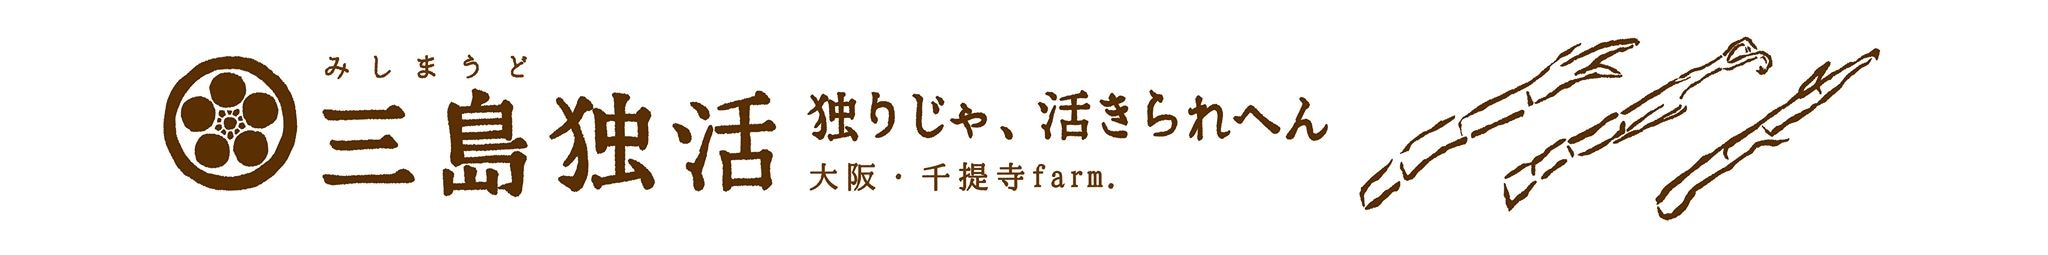 千提寺farm.